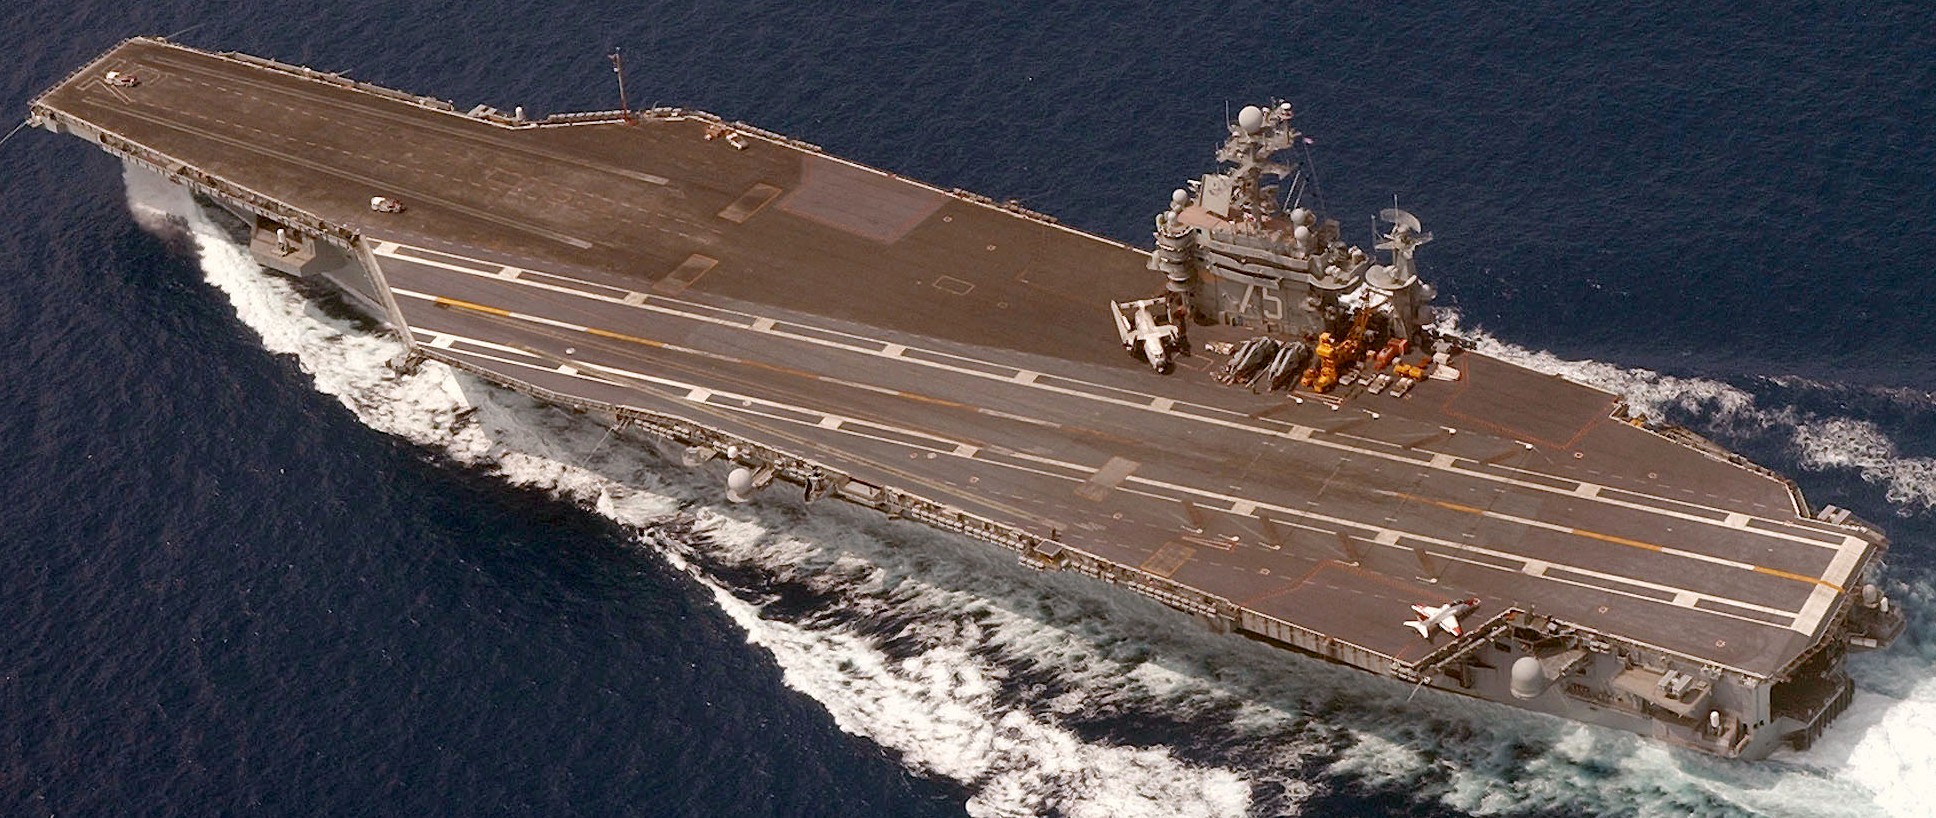 uss harry s. truman cvn-75 aircraft carrier 189